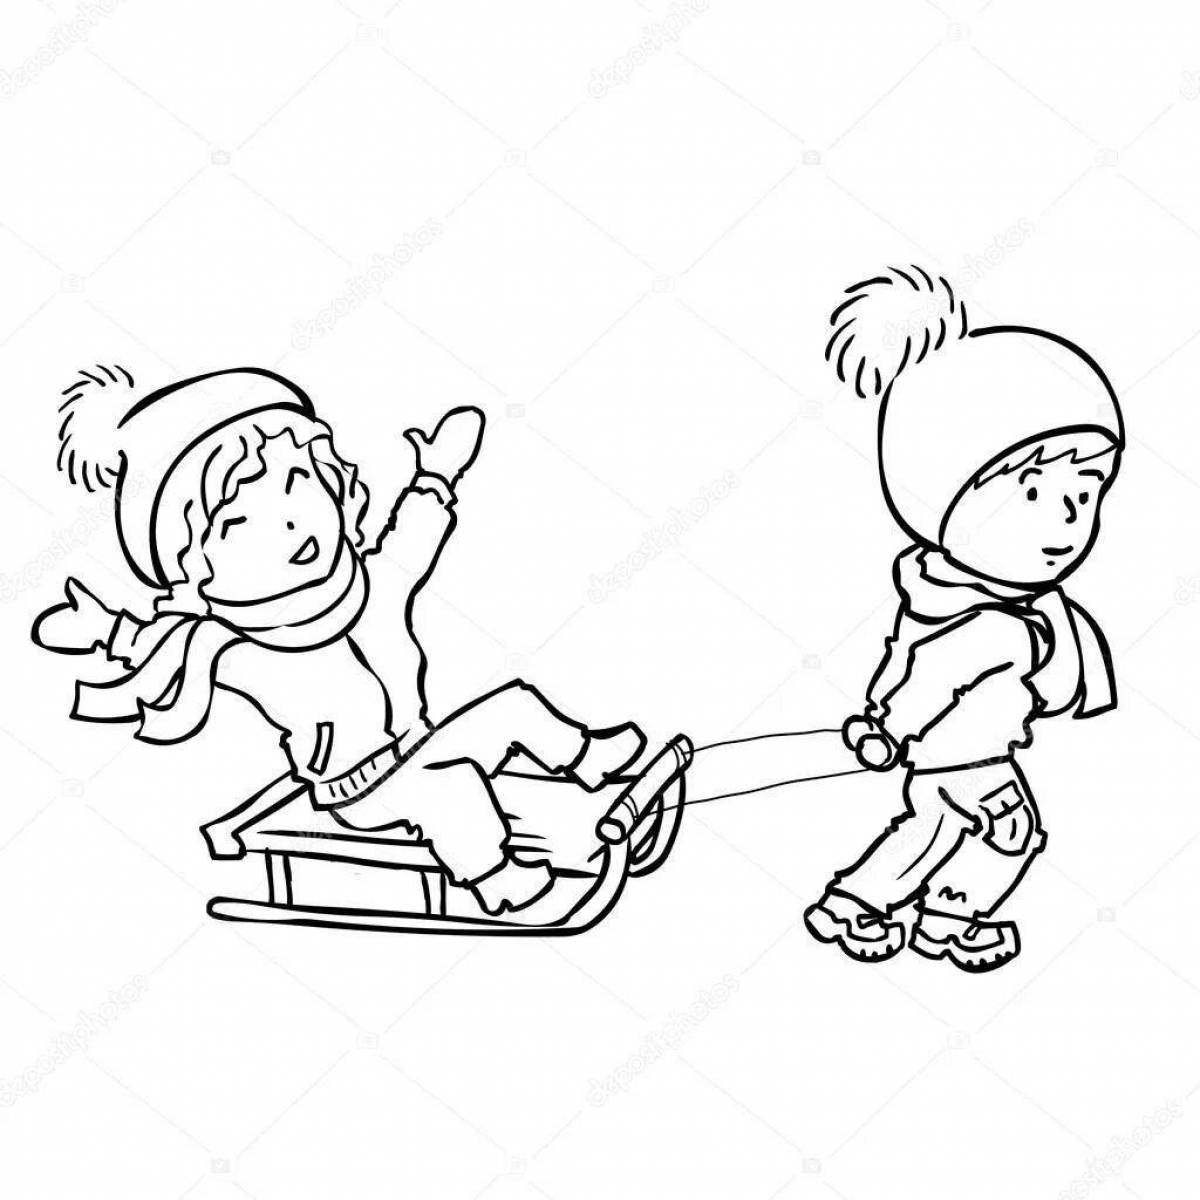 Буйные дети катаются на санках с горы